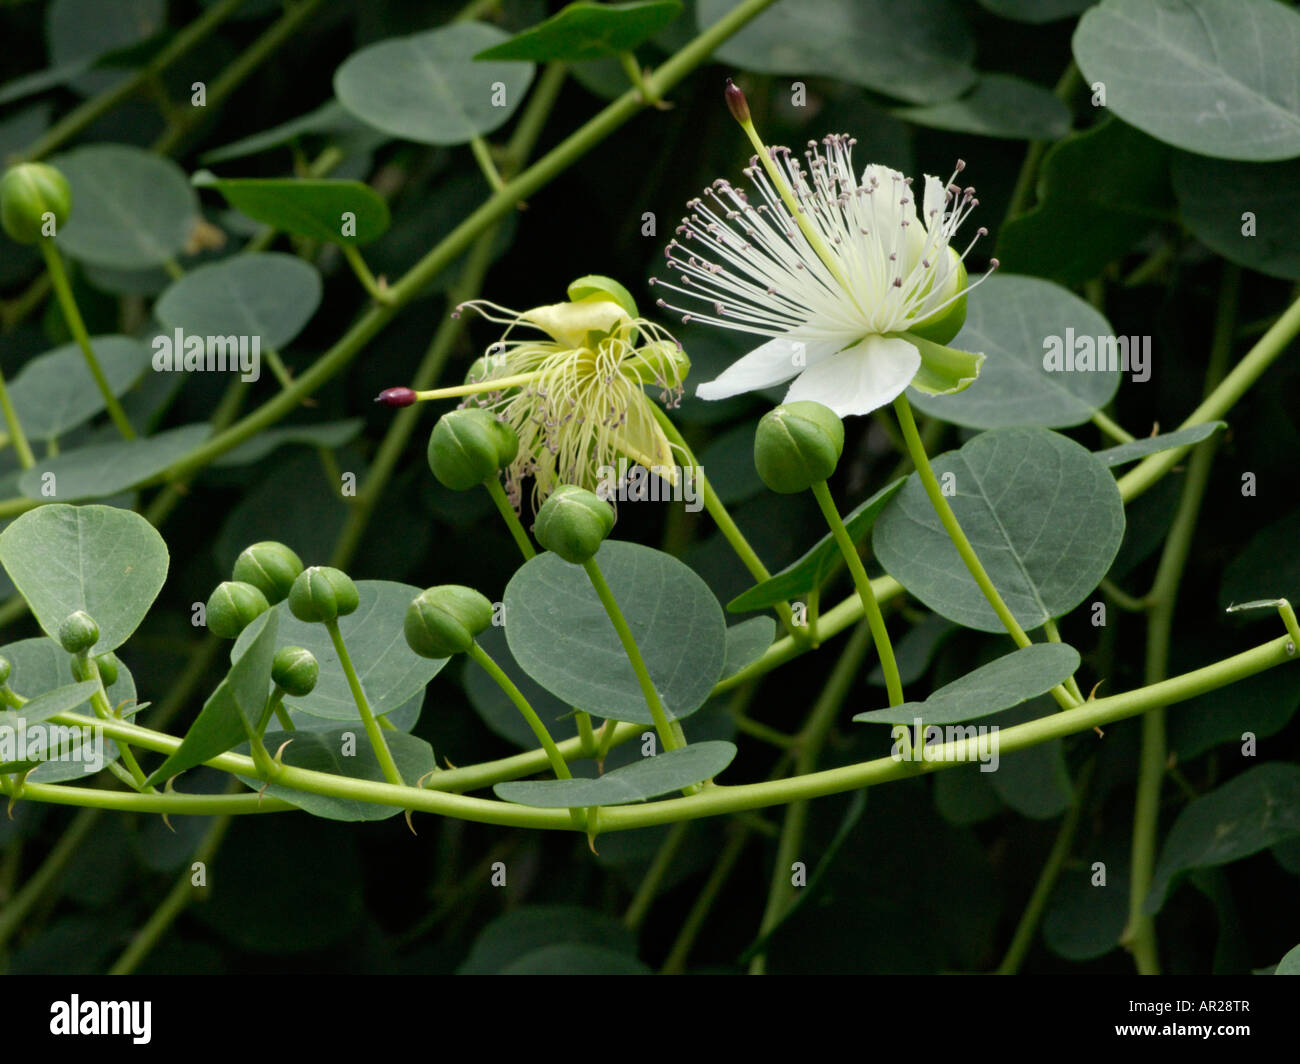 Caper plant (Capparis spinosa Stock Photo - Alamy